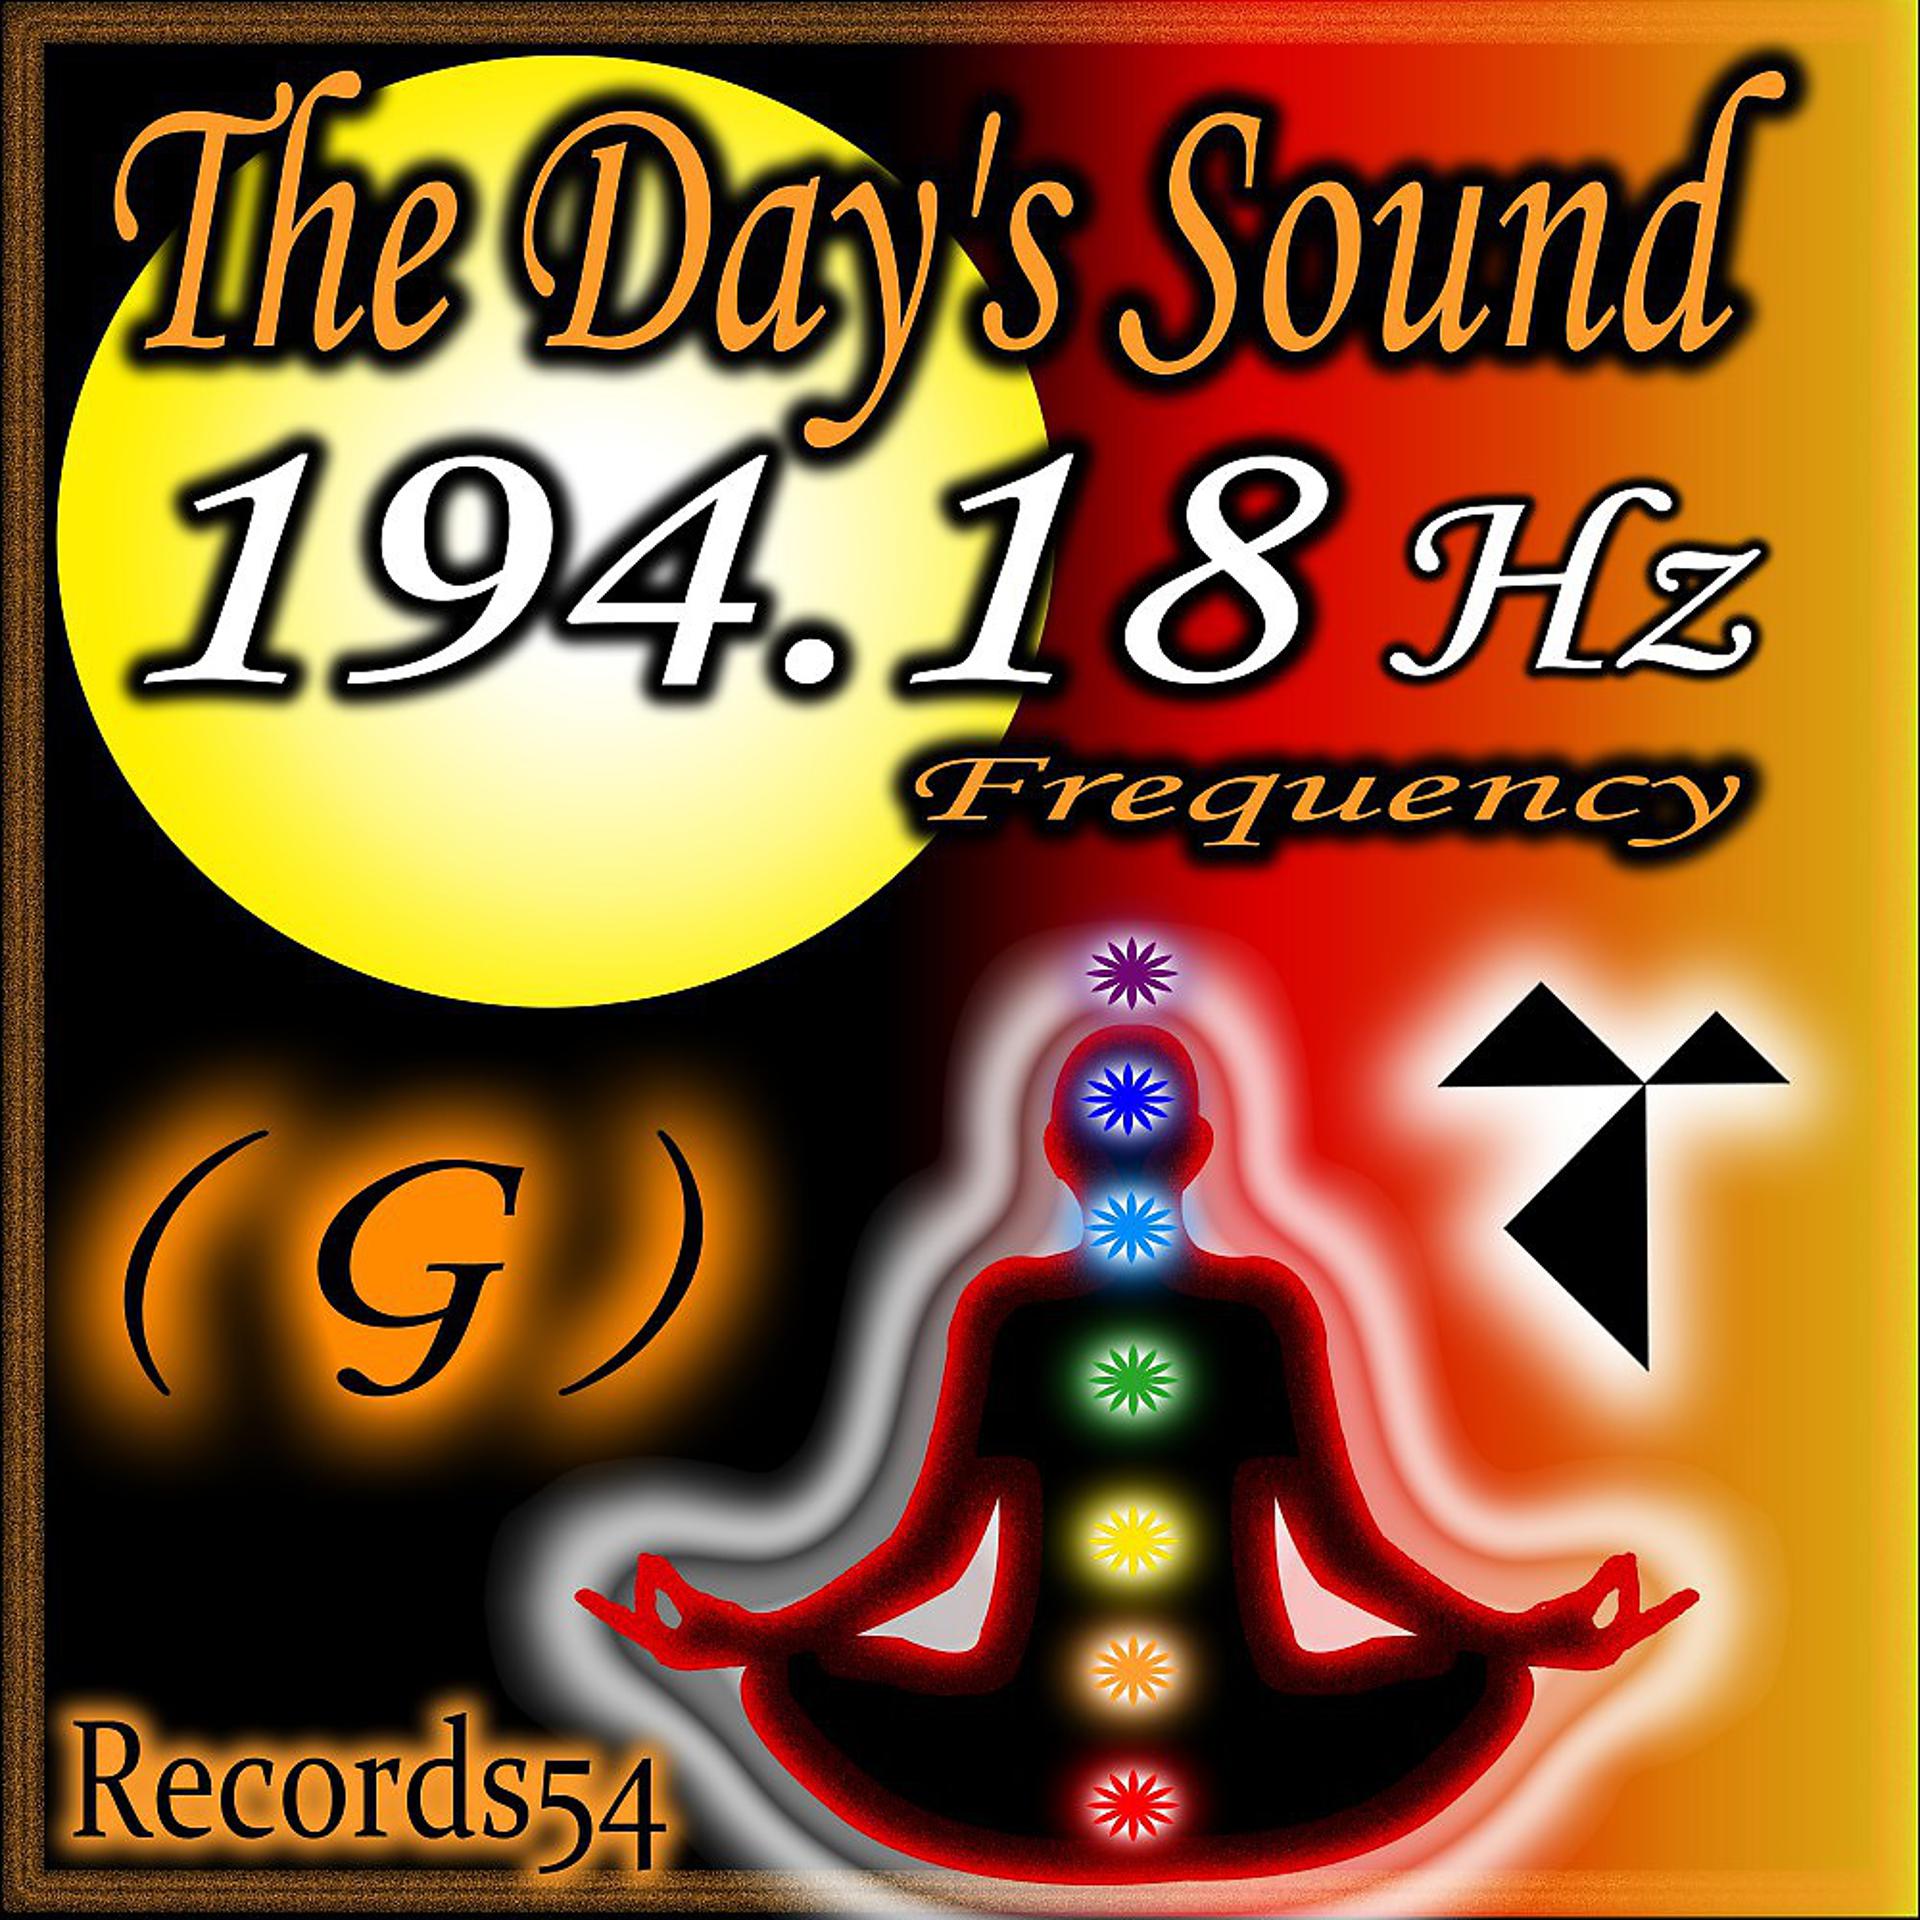 Постер альбома The Day's Sound - El Sonido del Día - Der Tageston - Le son du Jour 194.18 Hz G